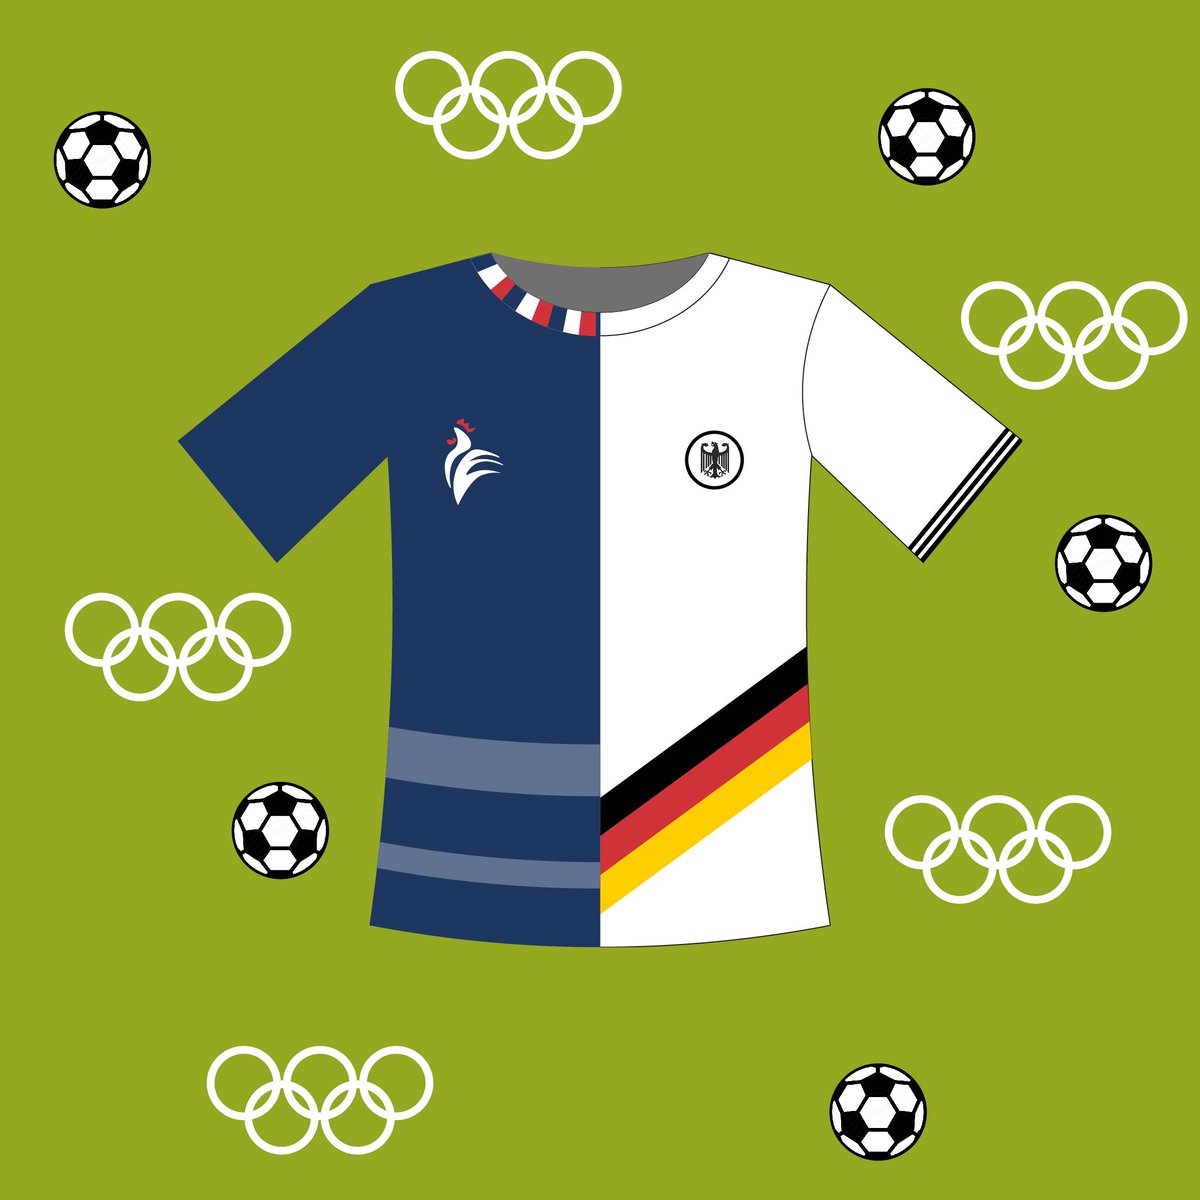 Aufruf zu deutsch-französischen Sportprojekten! Mit Blick auf die @EURO2024 in Deutschland und die @Olympics in @Paris2024, freut sich ganz @sportDland mit @FranceOlympique und @iocmedia auf den deutsch-französischen Sportsommer ⚽🏓🤺🥊🏇🏽⛹🏻‍♀️🎾🏄‍♂️ 🏅 ➡️buergerfonds.eu/aktuelles/meld…